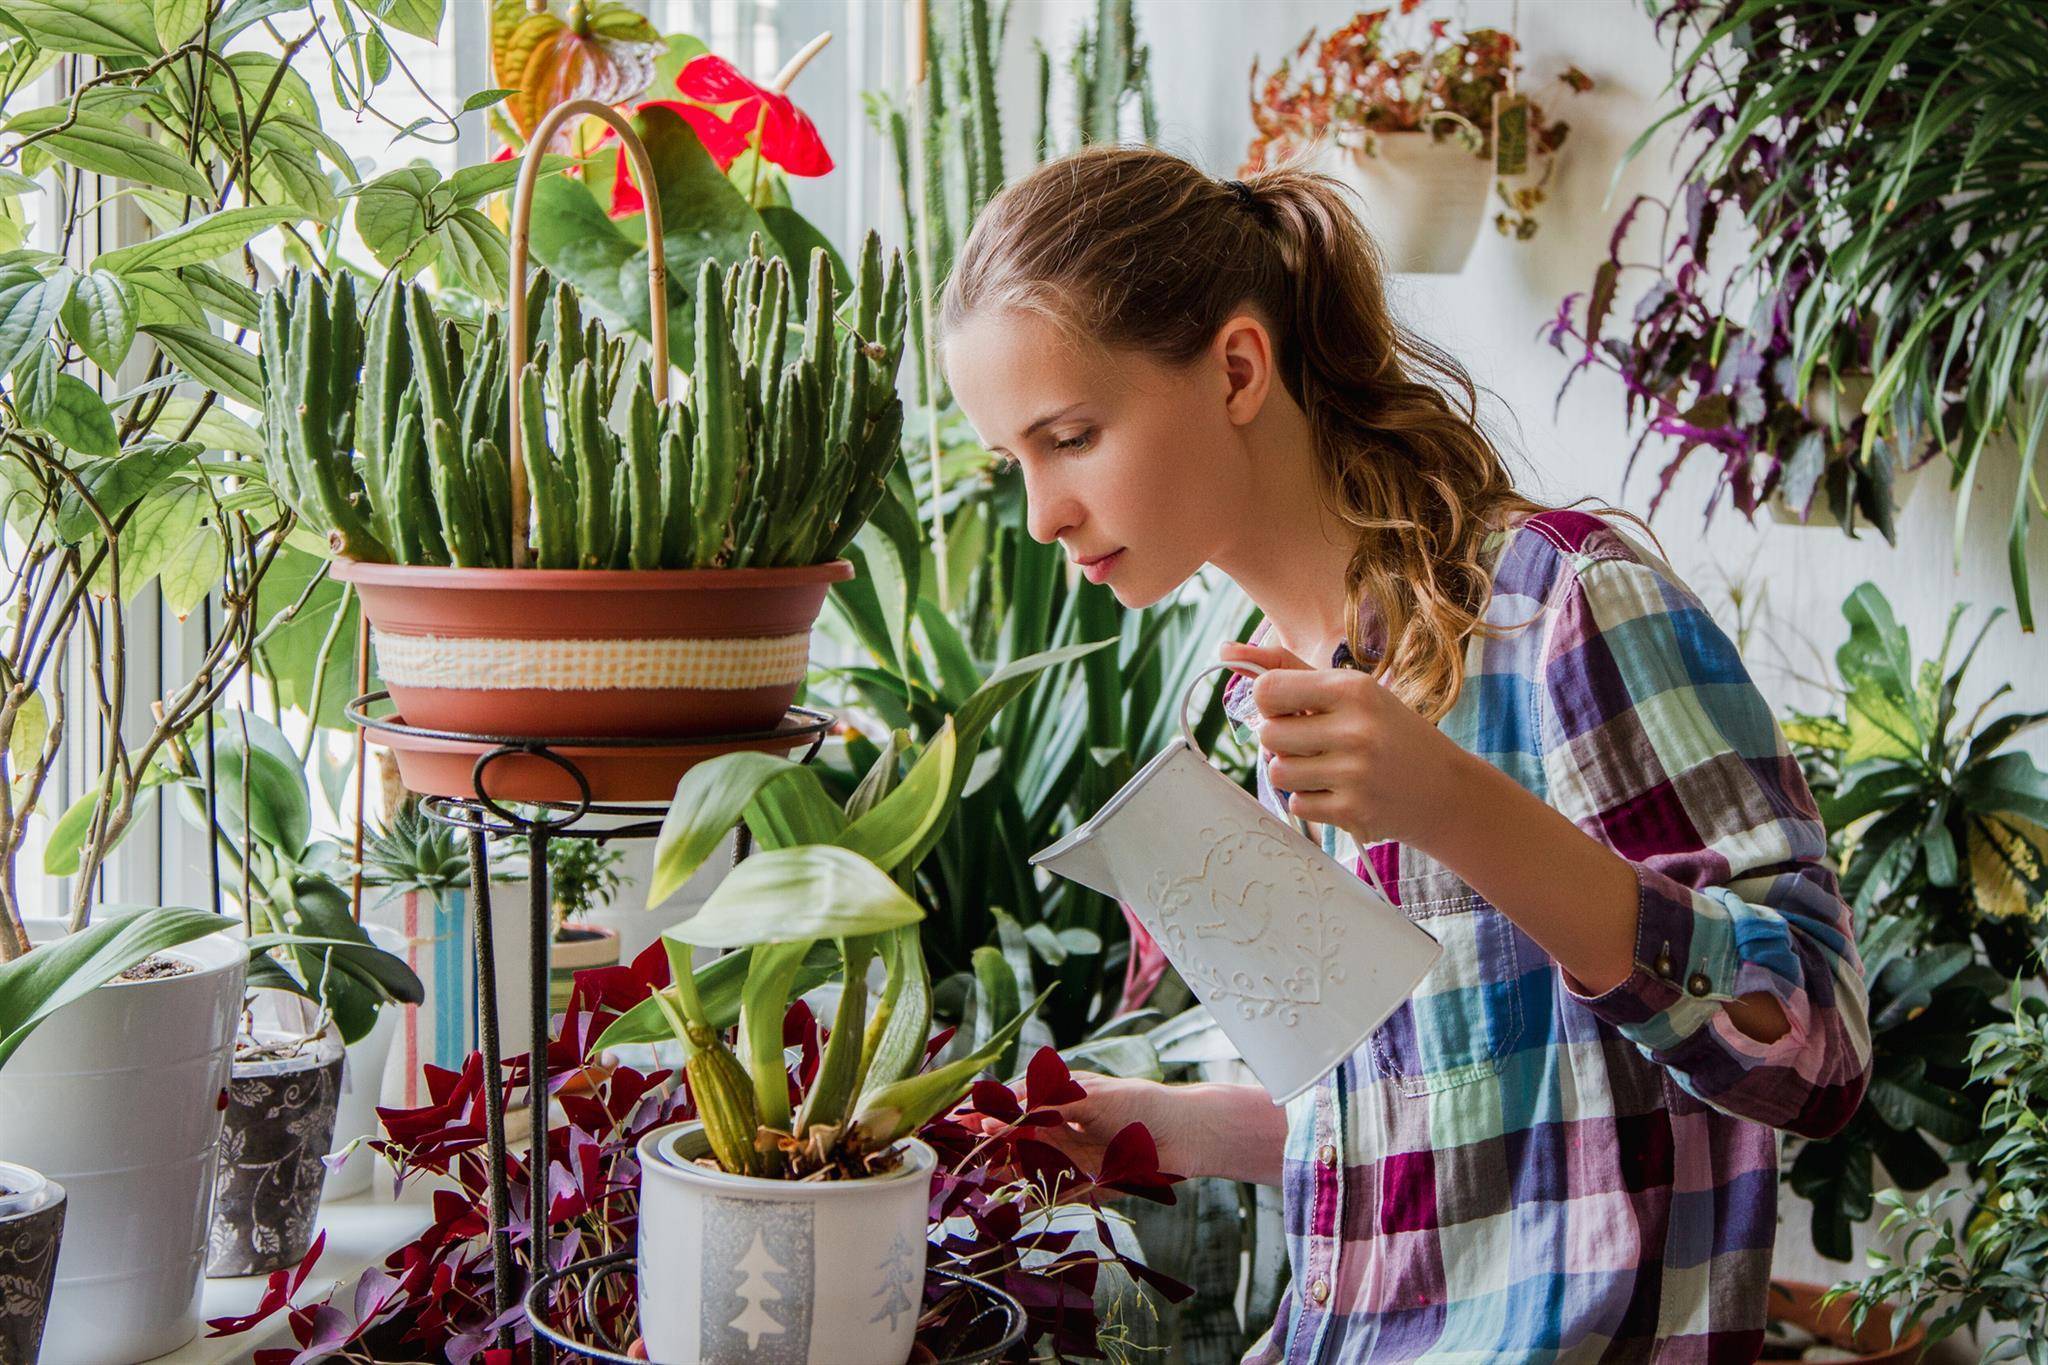 16 растений, которые обязательно должны быть у вас дома